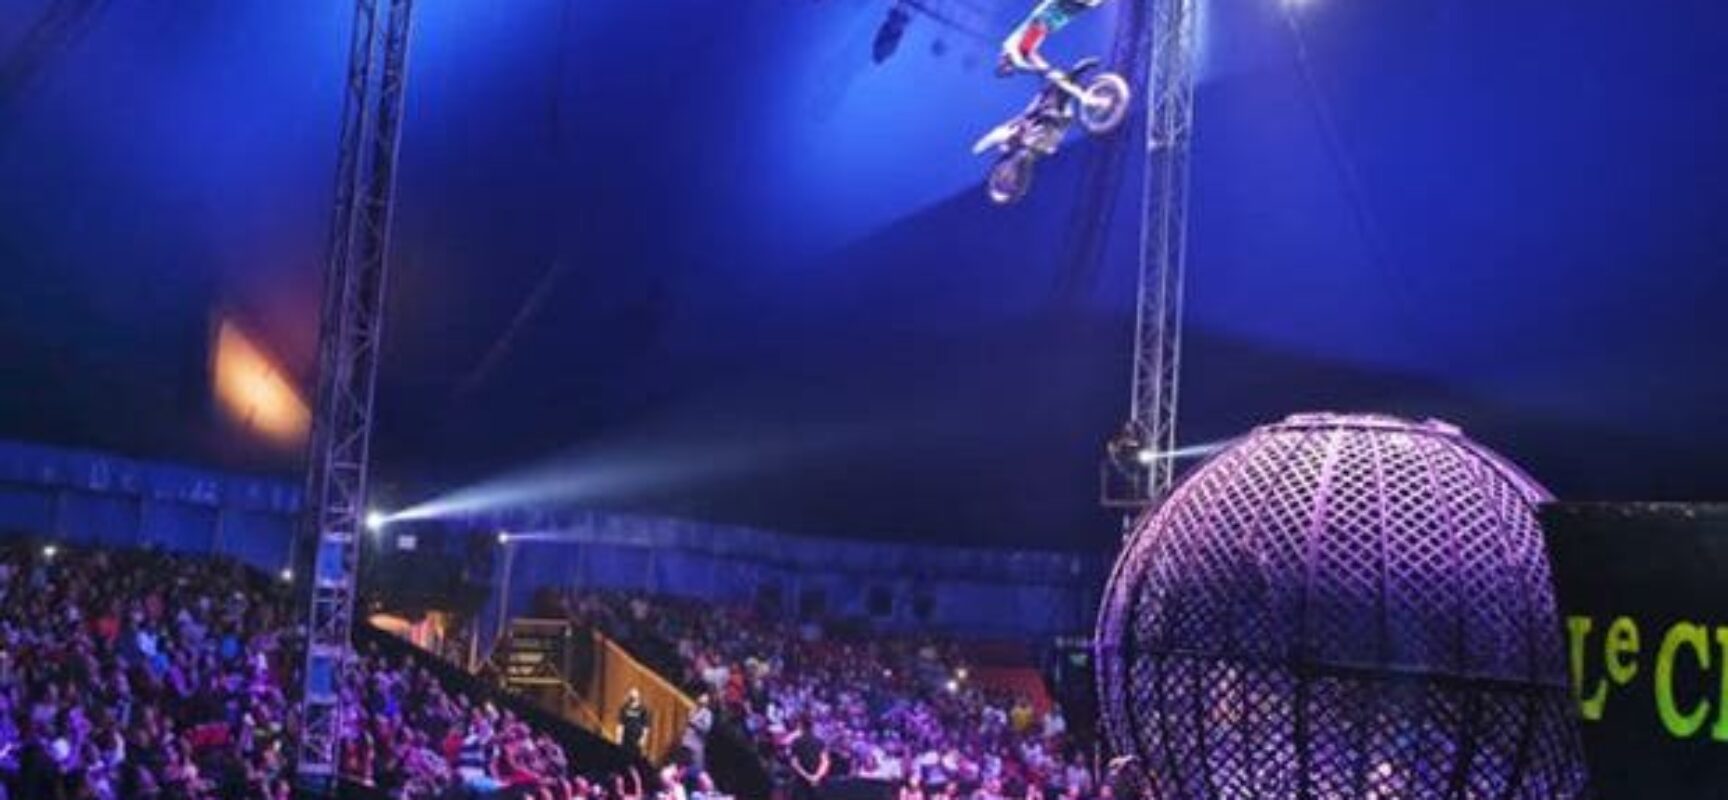 Dono do circo Le Cirque comemora retorno das atividades em Salvador